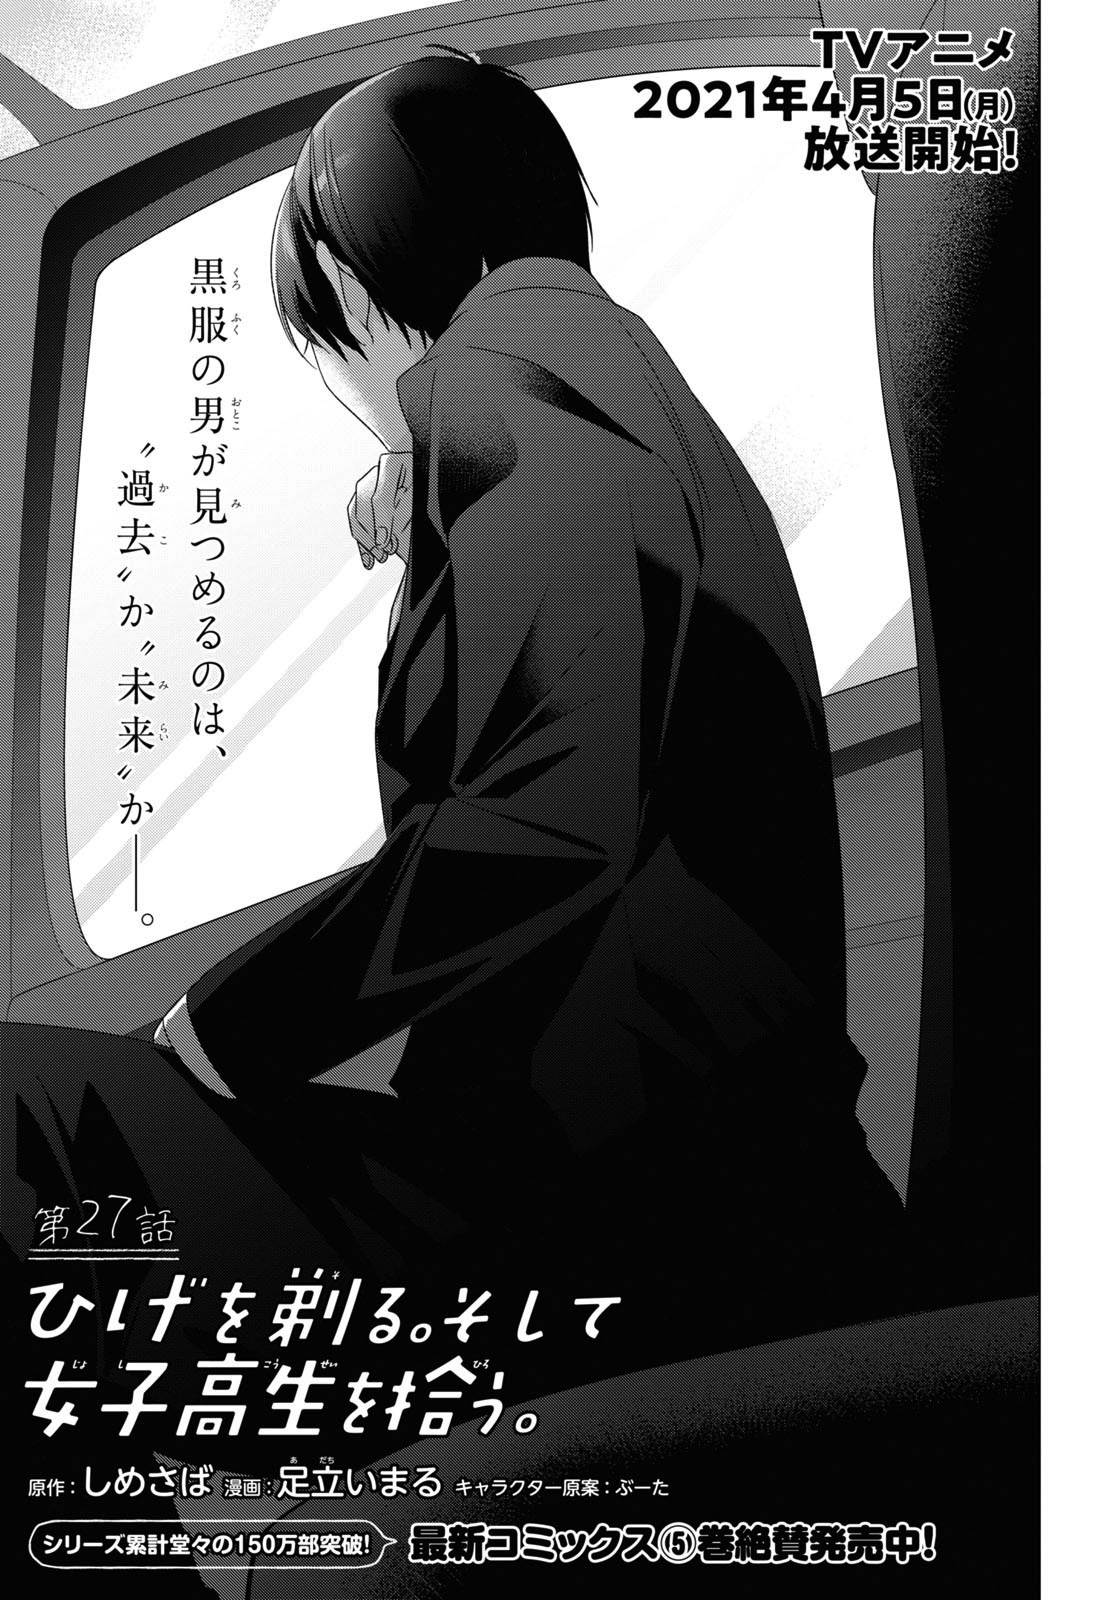 Manga higehiro Higehiro Volume